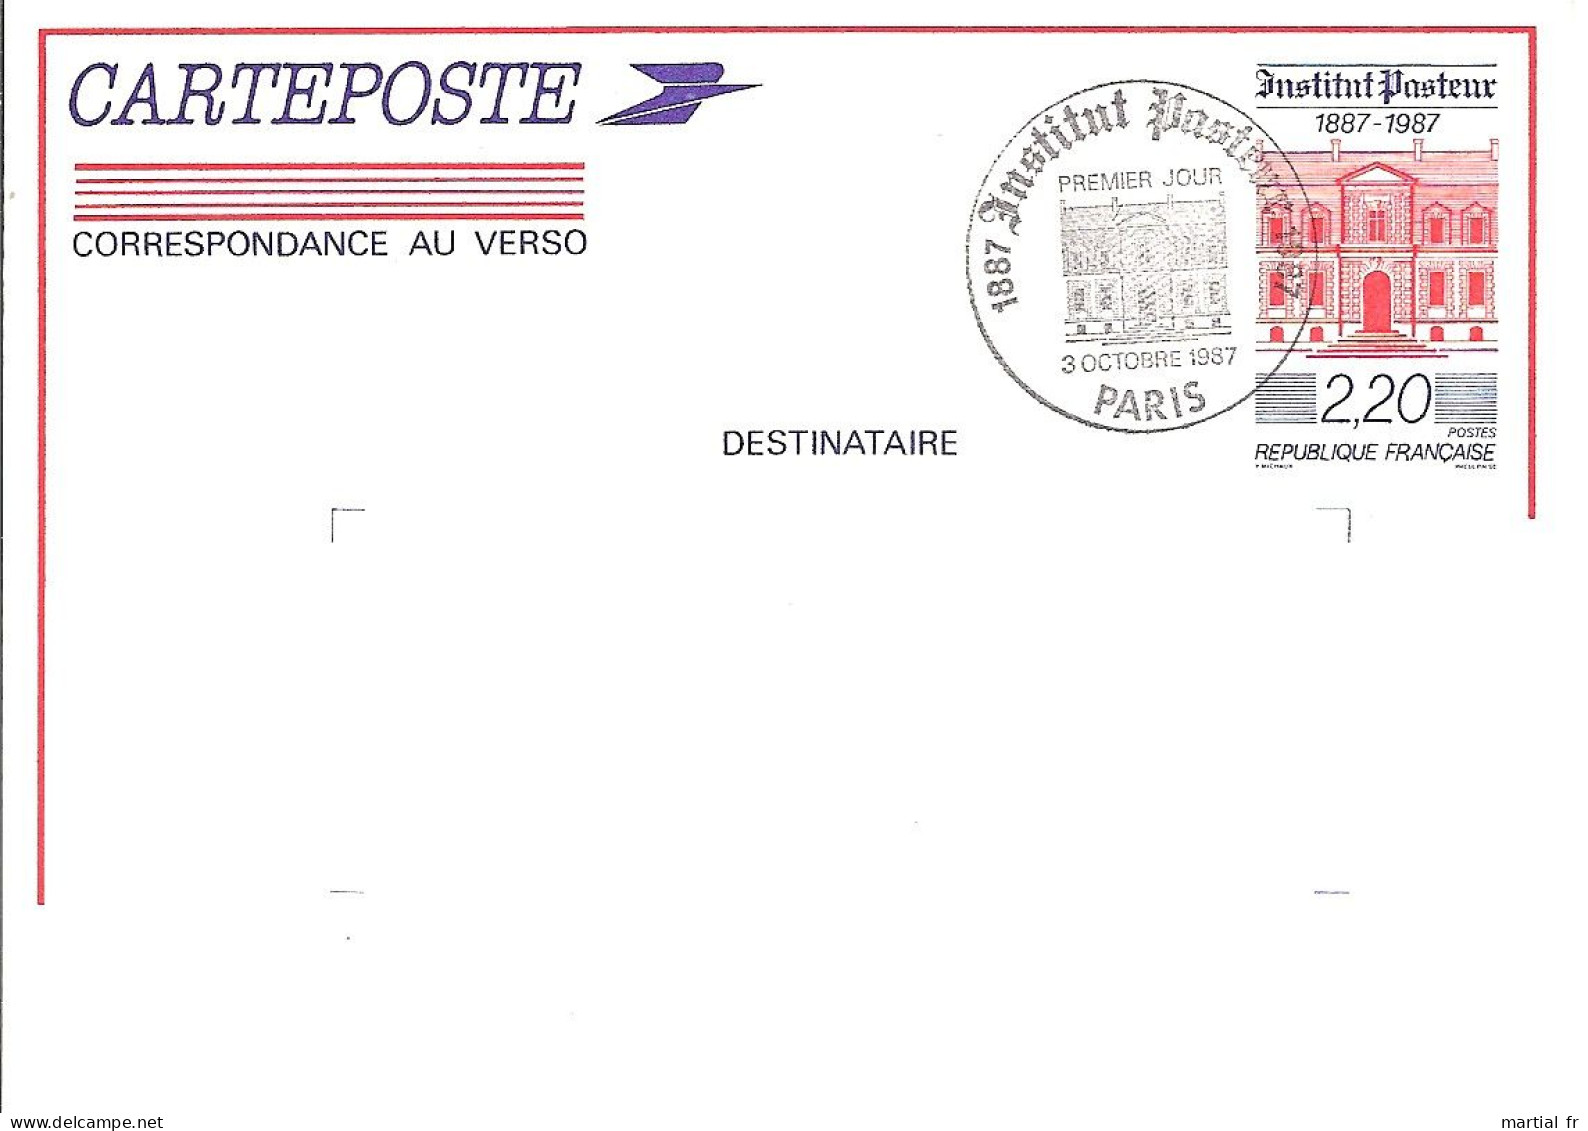 ENTIER POSTAL Carte Postale 2496-CP1 Centenaire De L'Institut Pasteur 1987 1ER JOUR FDC ERSTAUSGABE GANZSACHE STATIONERY - Louis Pasteur